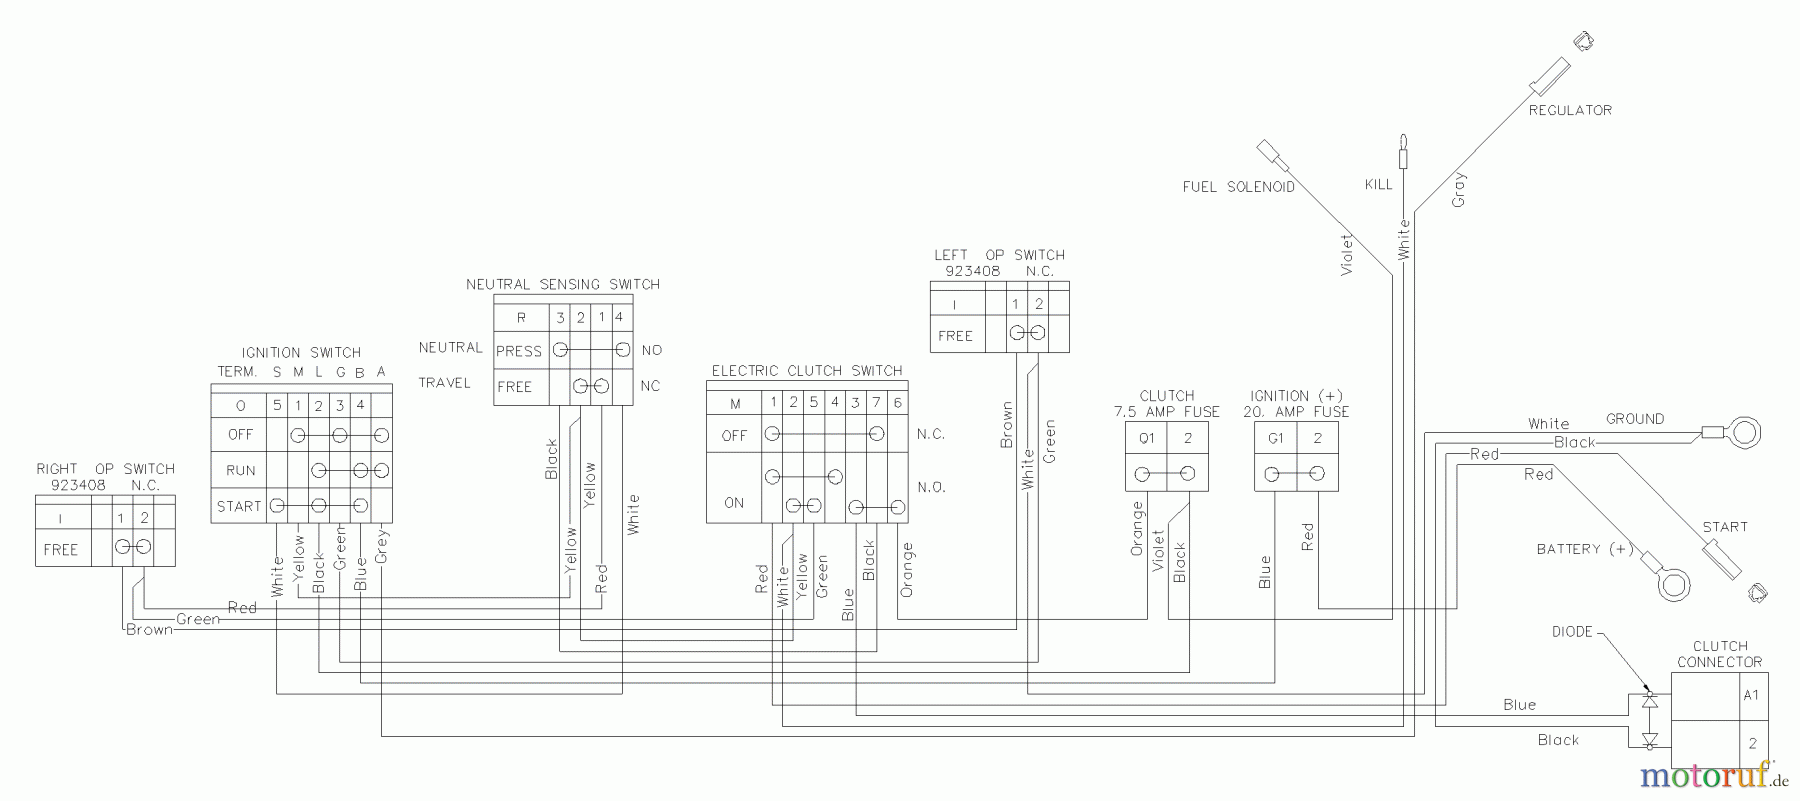  Husqvarna Rasenmäher für Großflächen WHF 4215ETS (968999127) - Husqvarna Wide-Area Walk-Behind Mower (2002-09 & After) Wiring Schematic